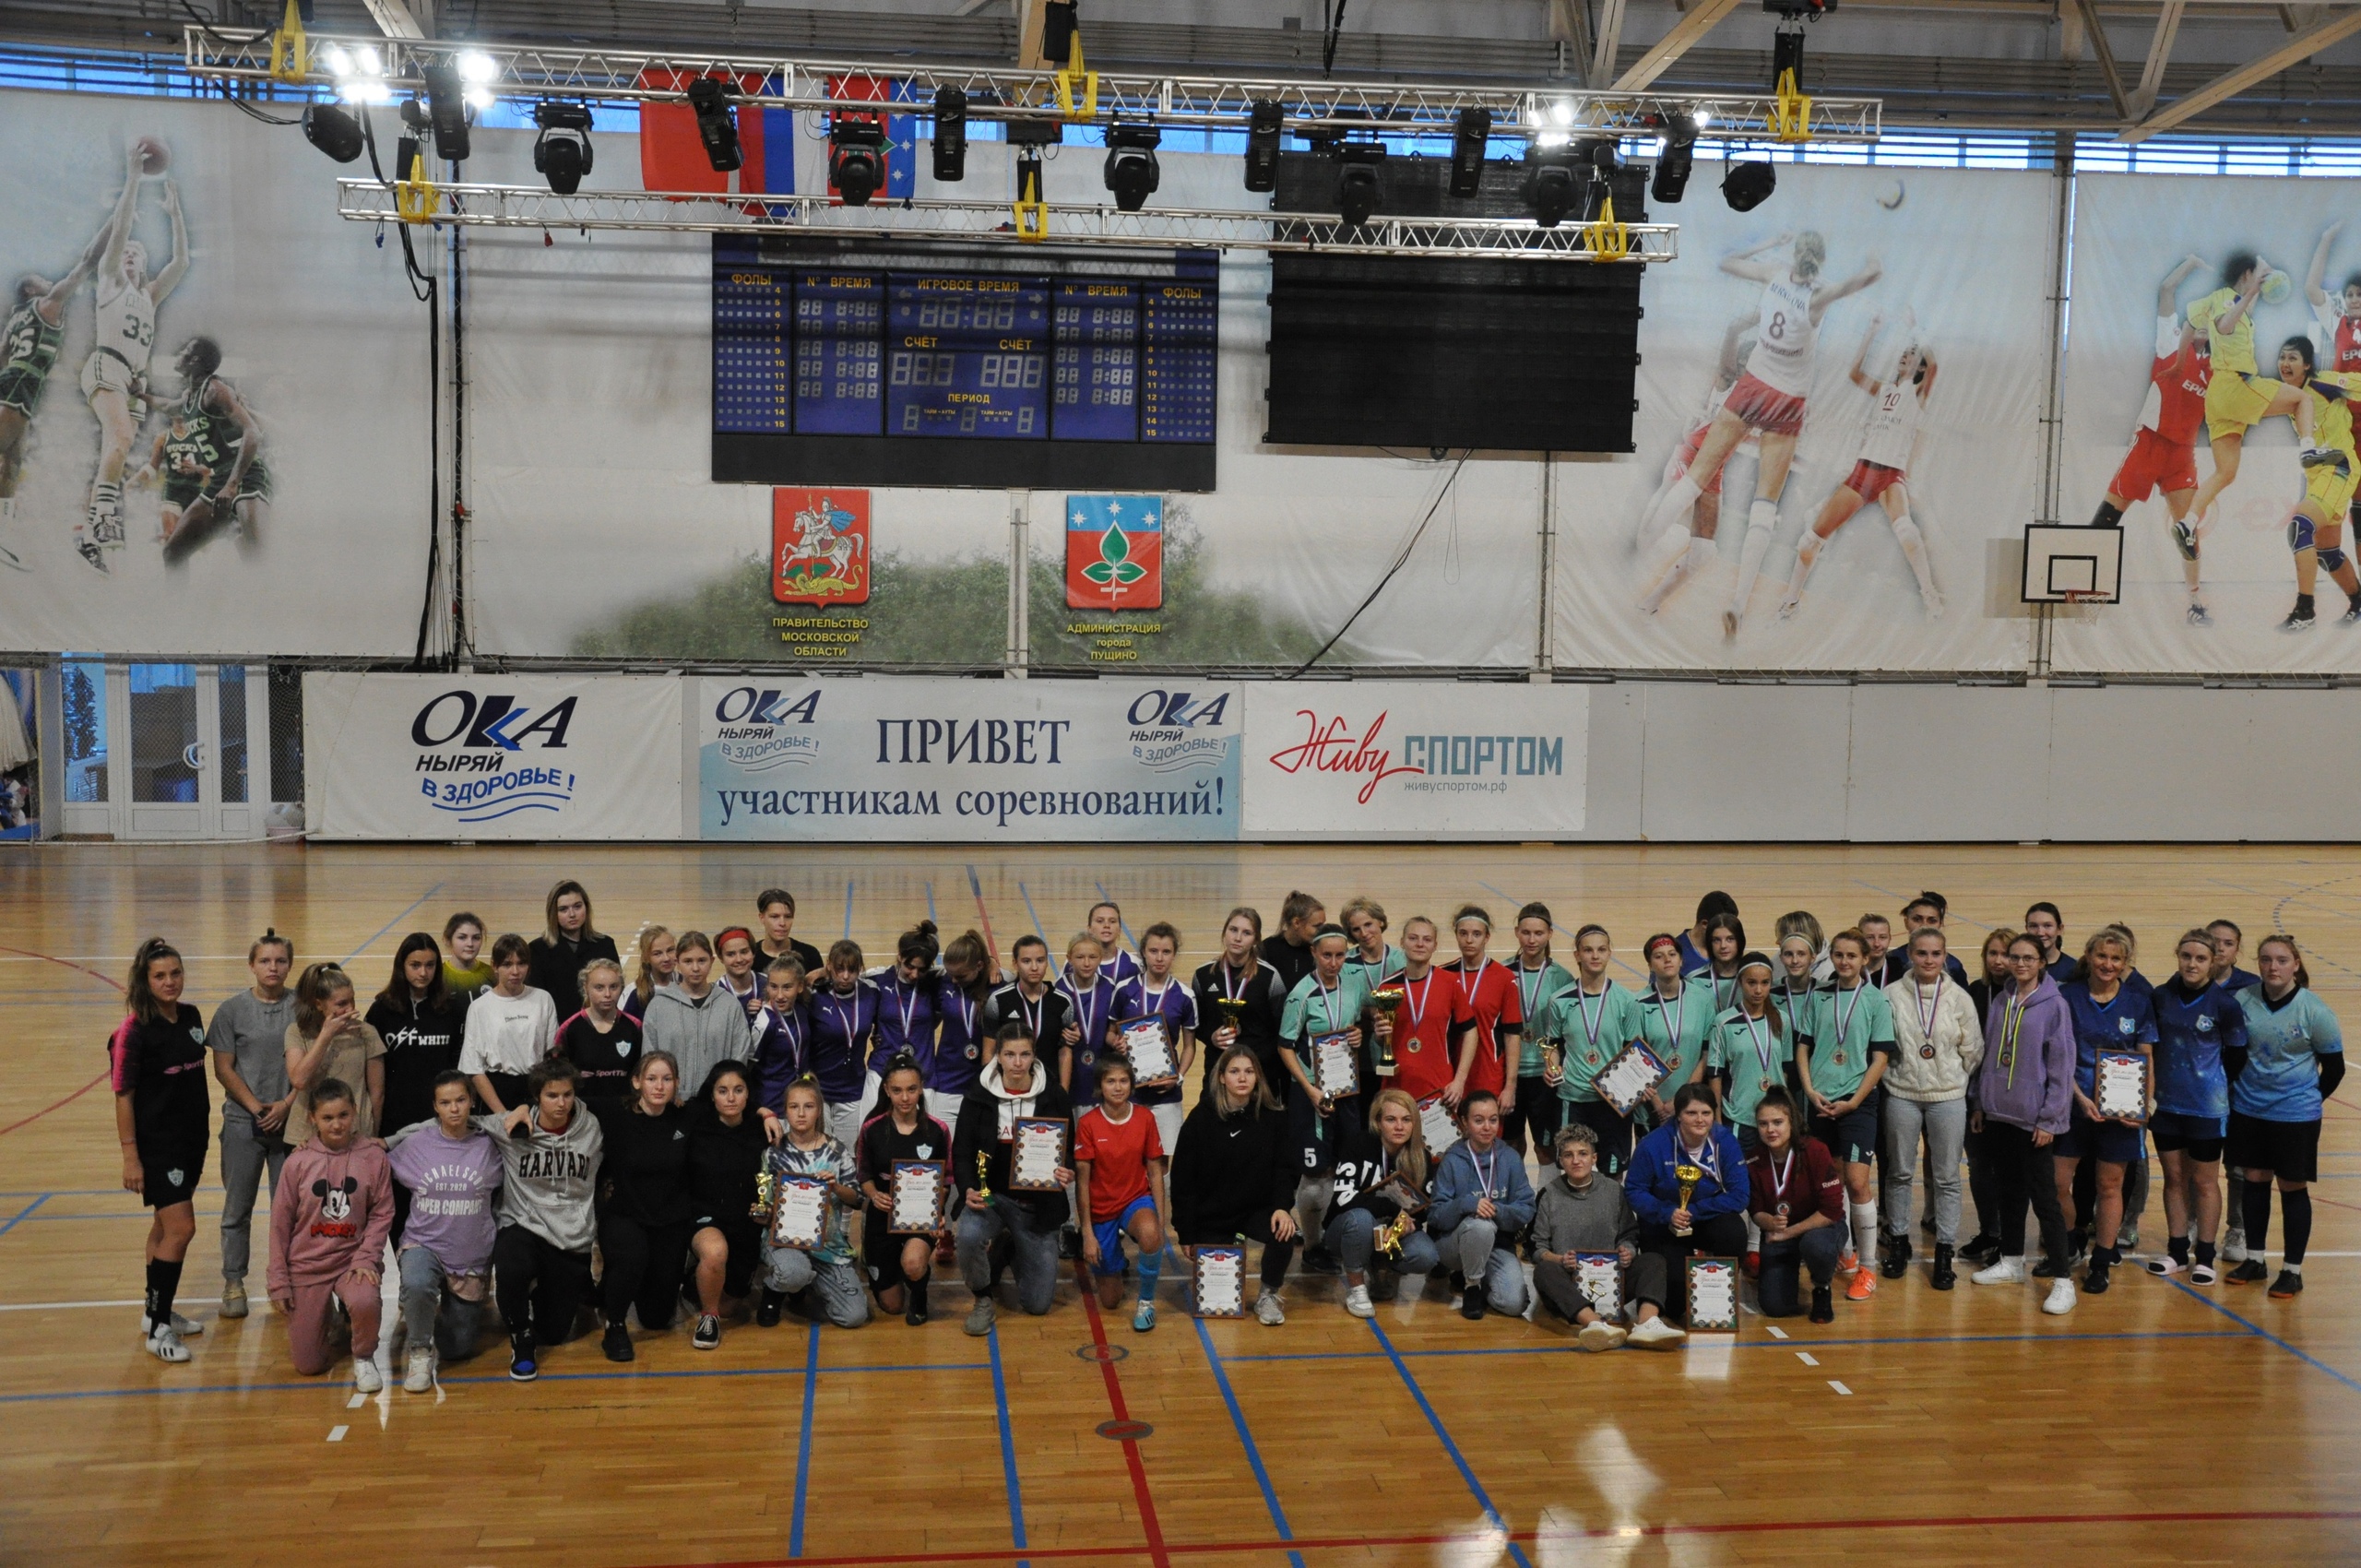 16-17 октября в Универсальном зале Дворца спорта «Ока» прошел Открытый осенний Кубок г.о. Пущино мини-футболу среди женских команд.